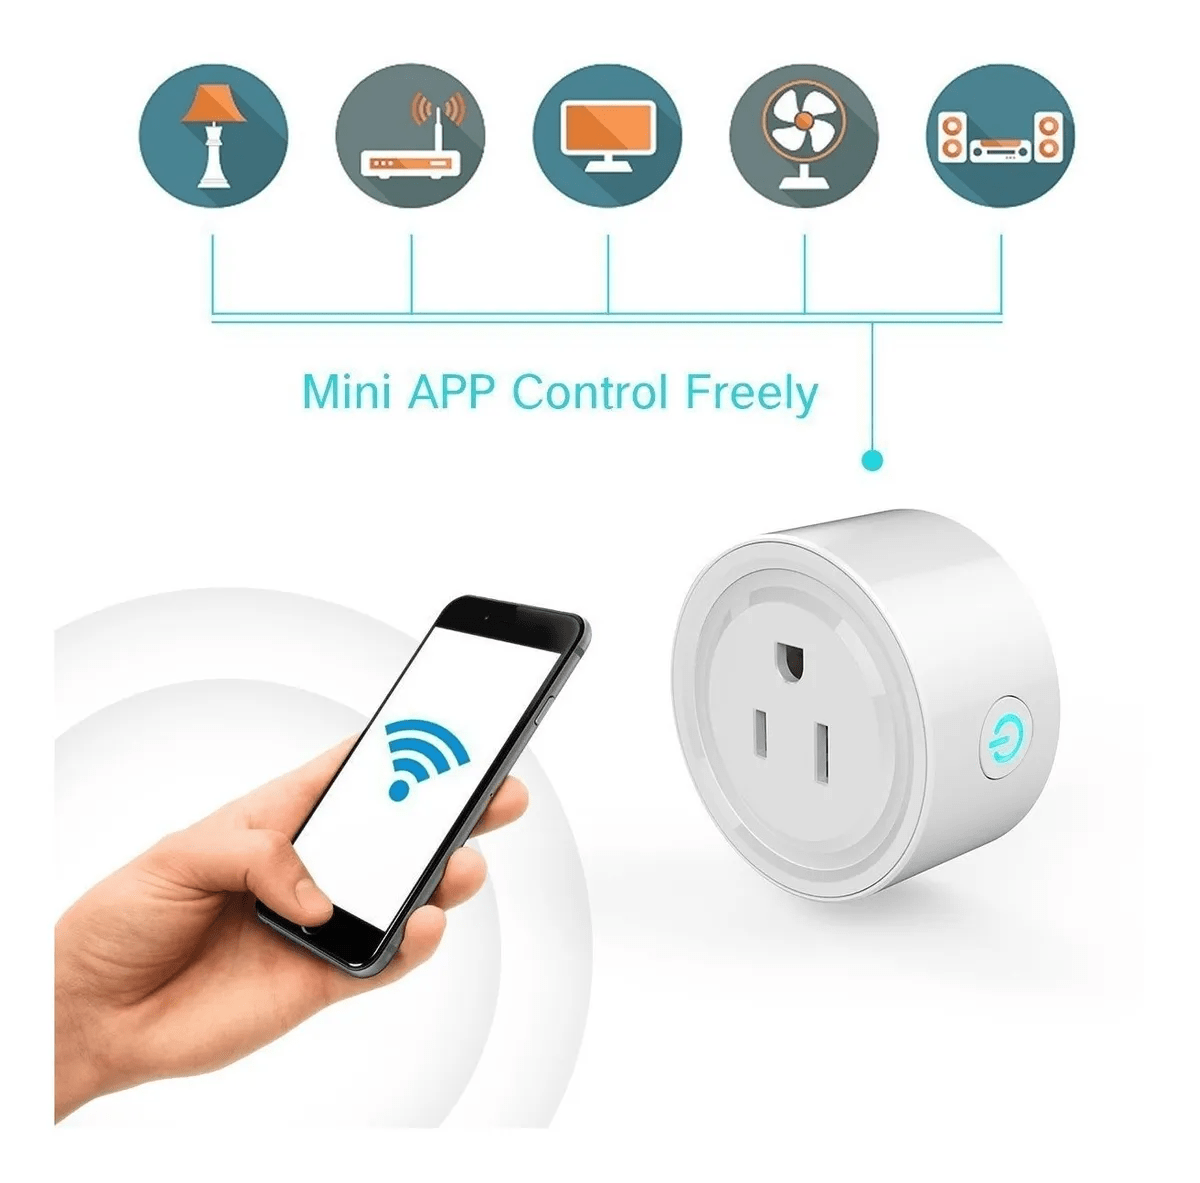 Enchufe Inteligente Smart Wifi Mini con Google Home Assitant y